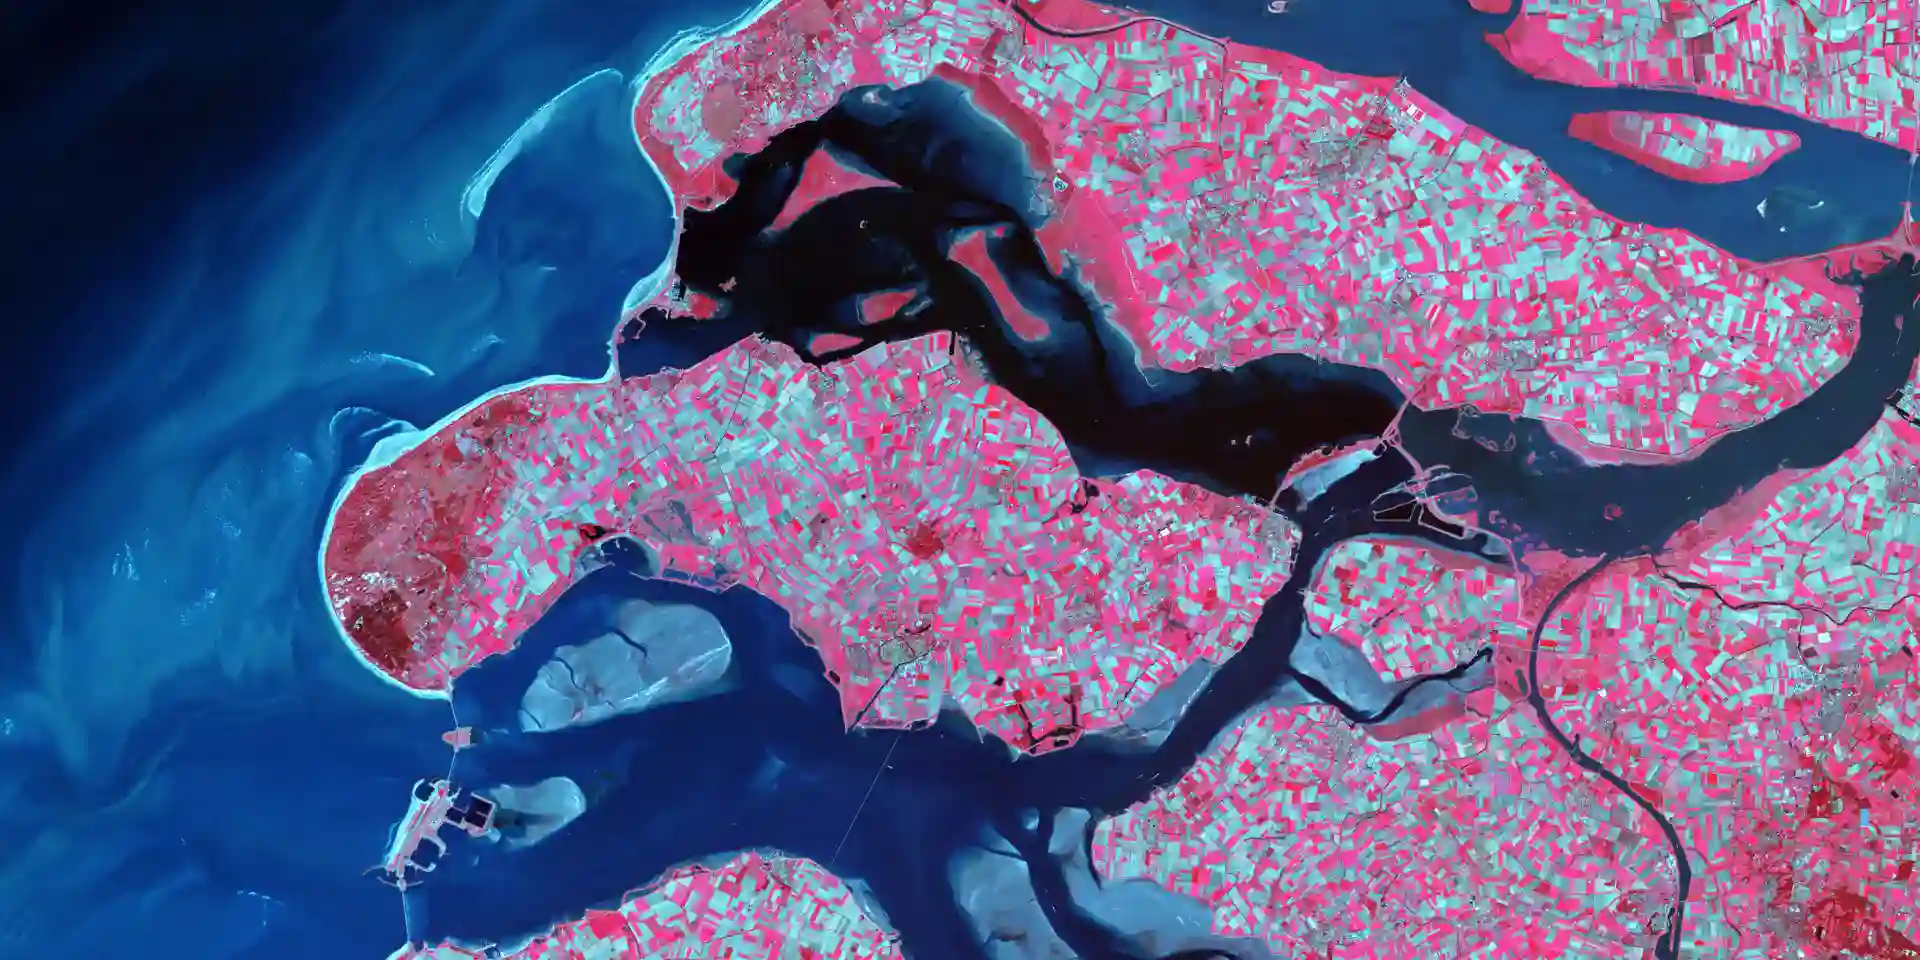 Pintura azul-rosa de parte de la tierra.